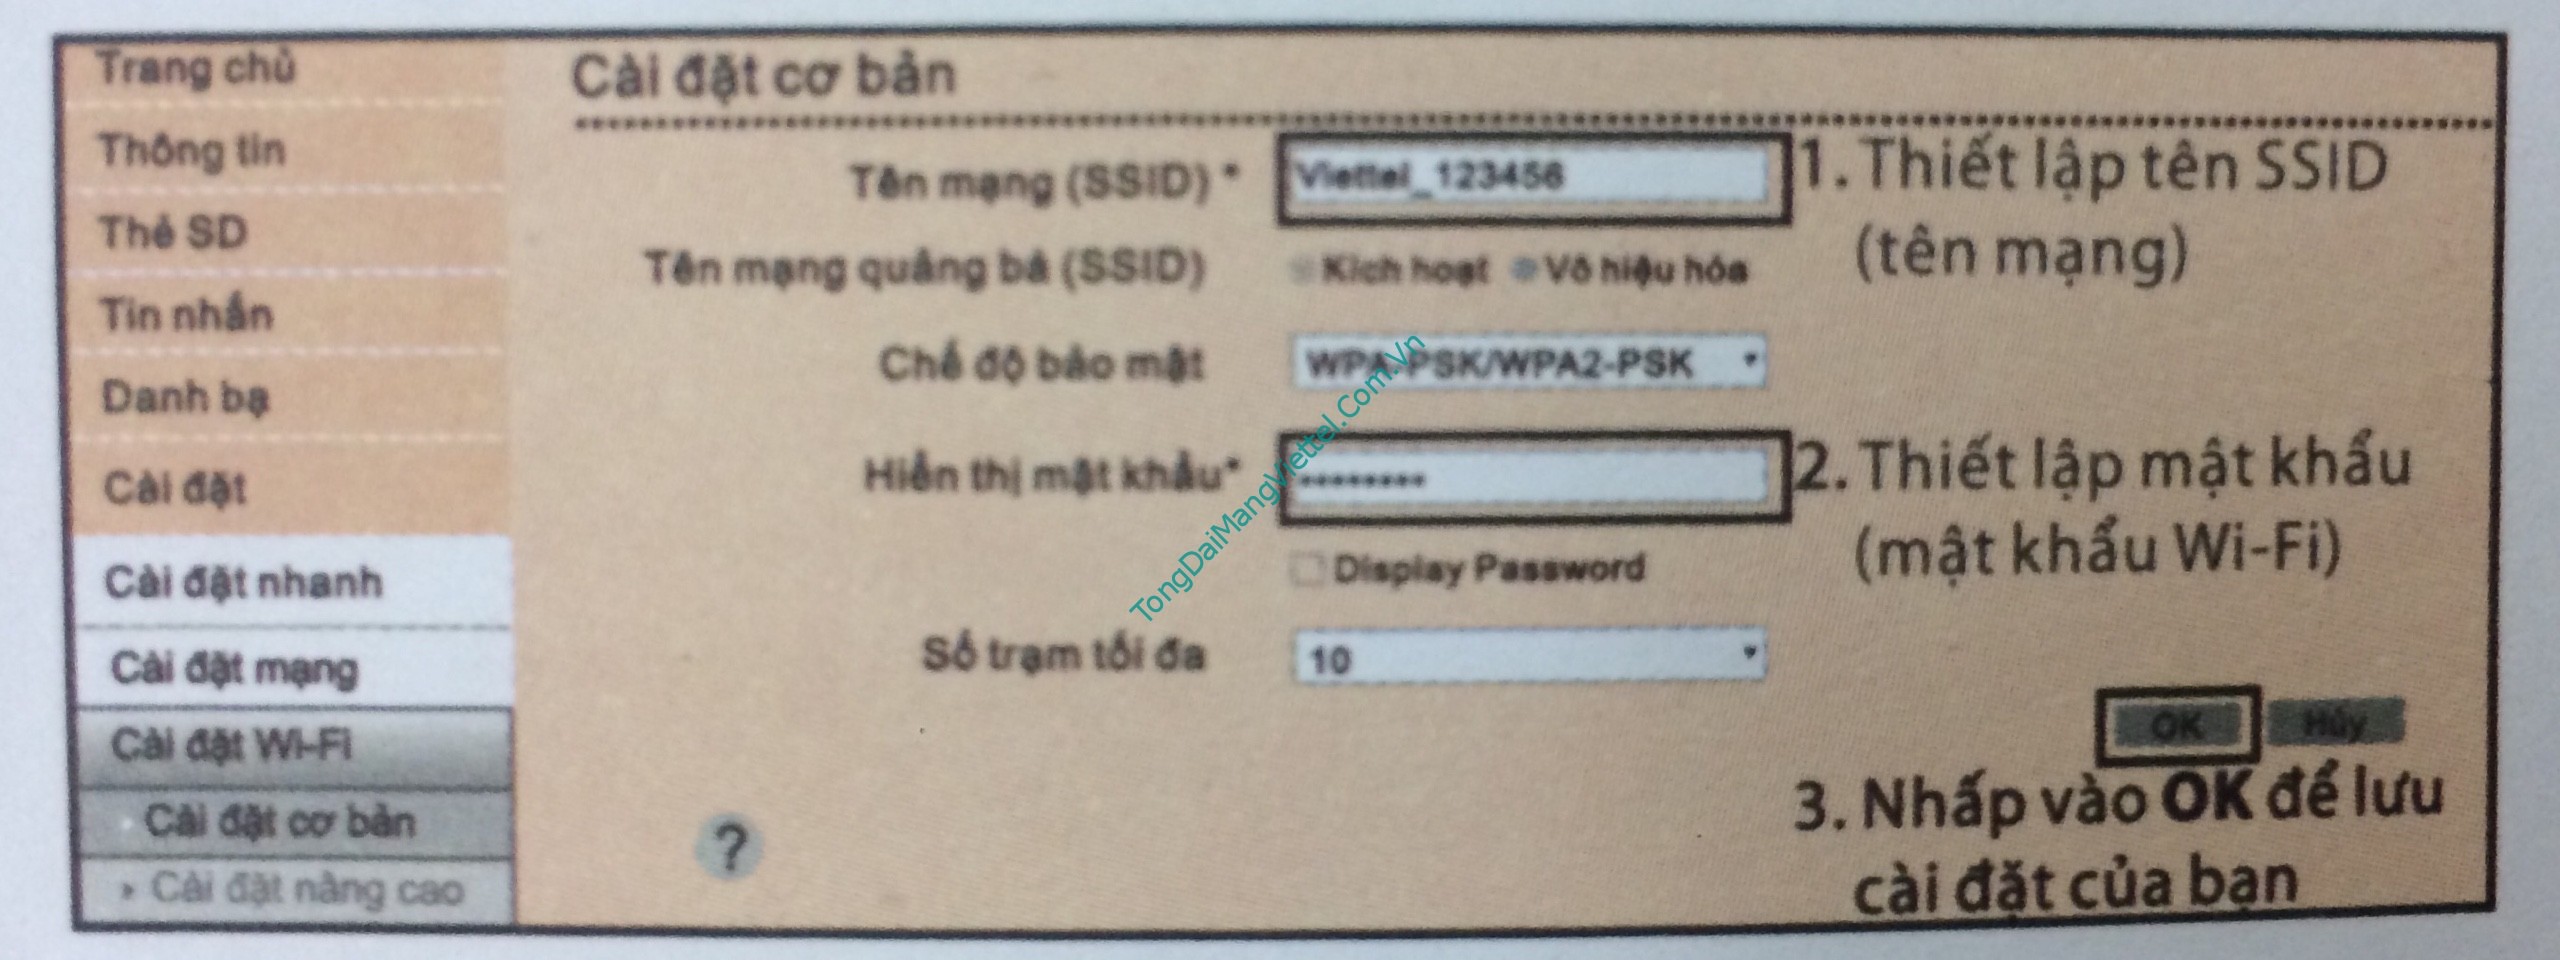 Hướng dẫn thay đổi tên Wifi và Mật khẩu cho D6610